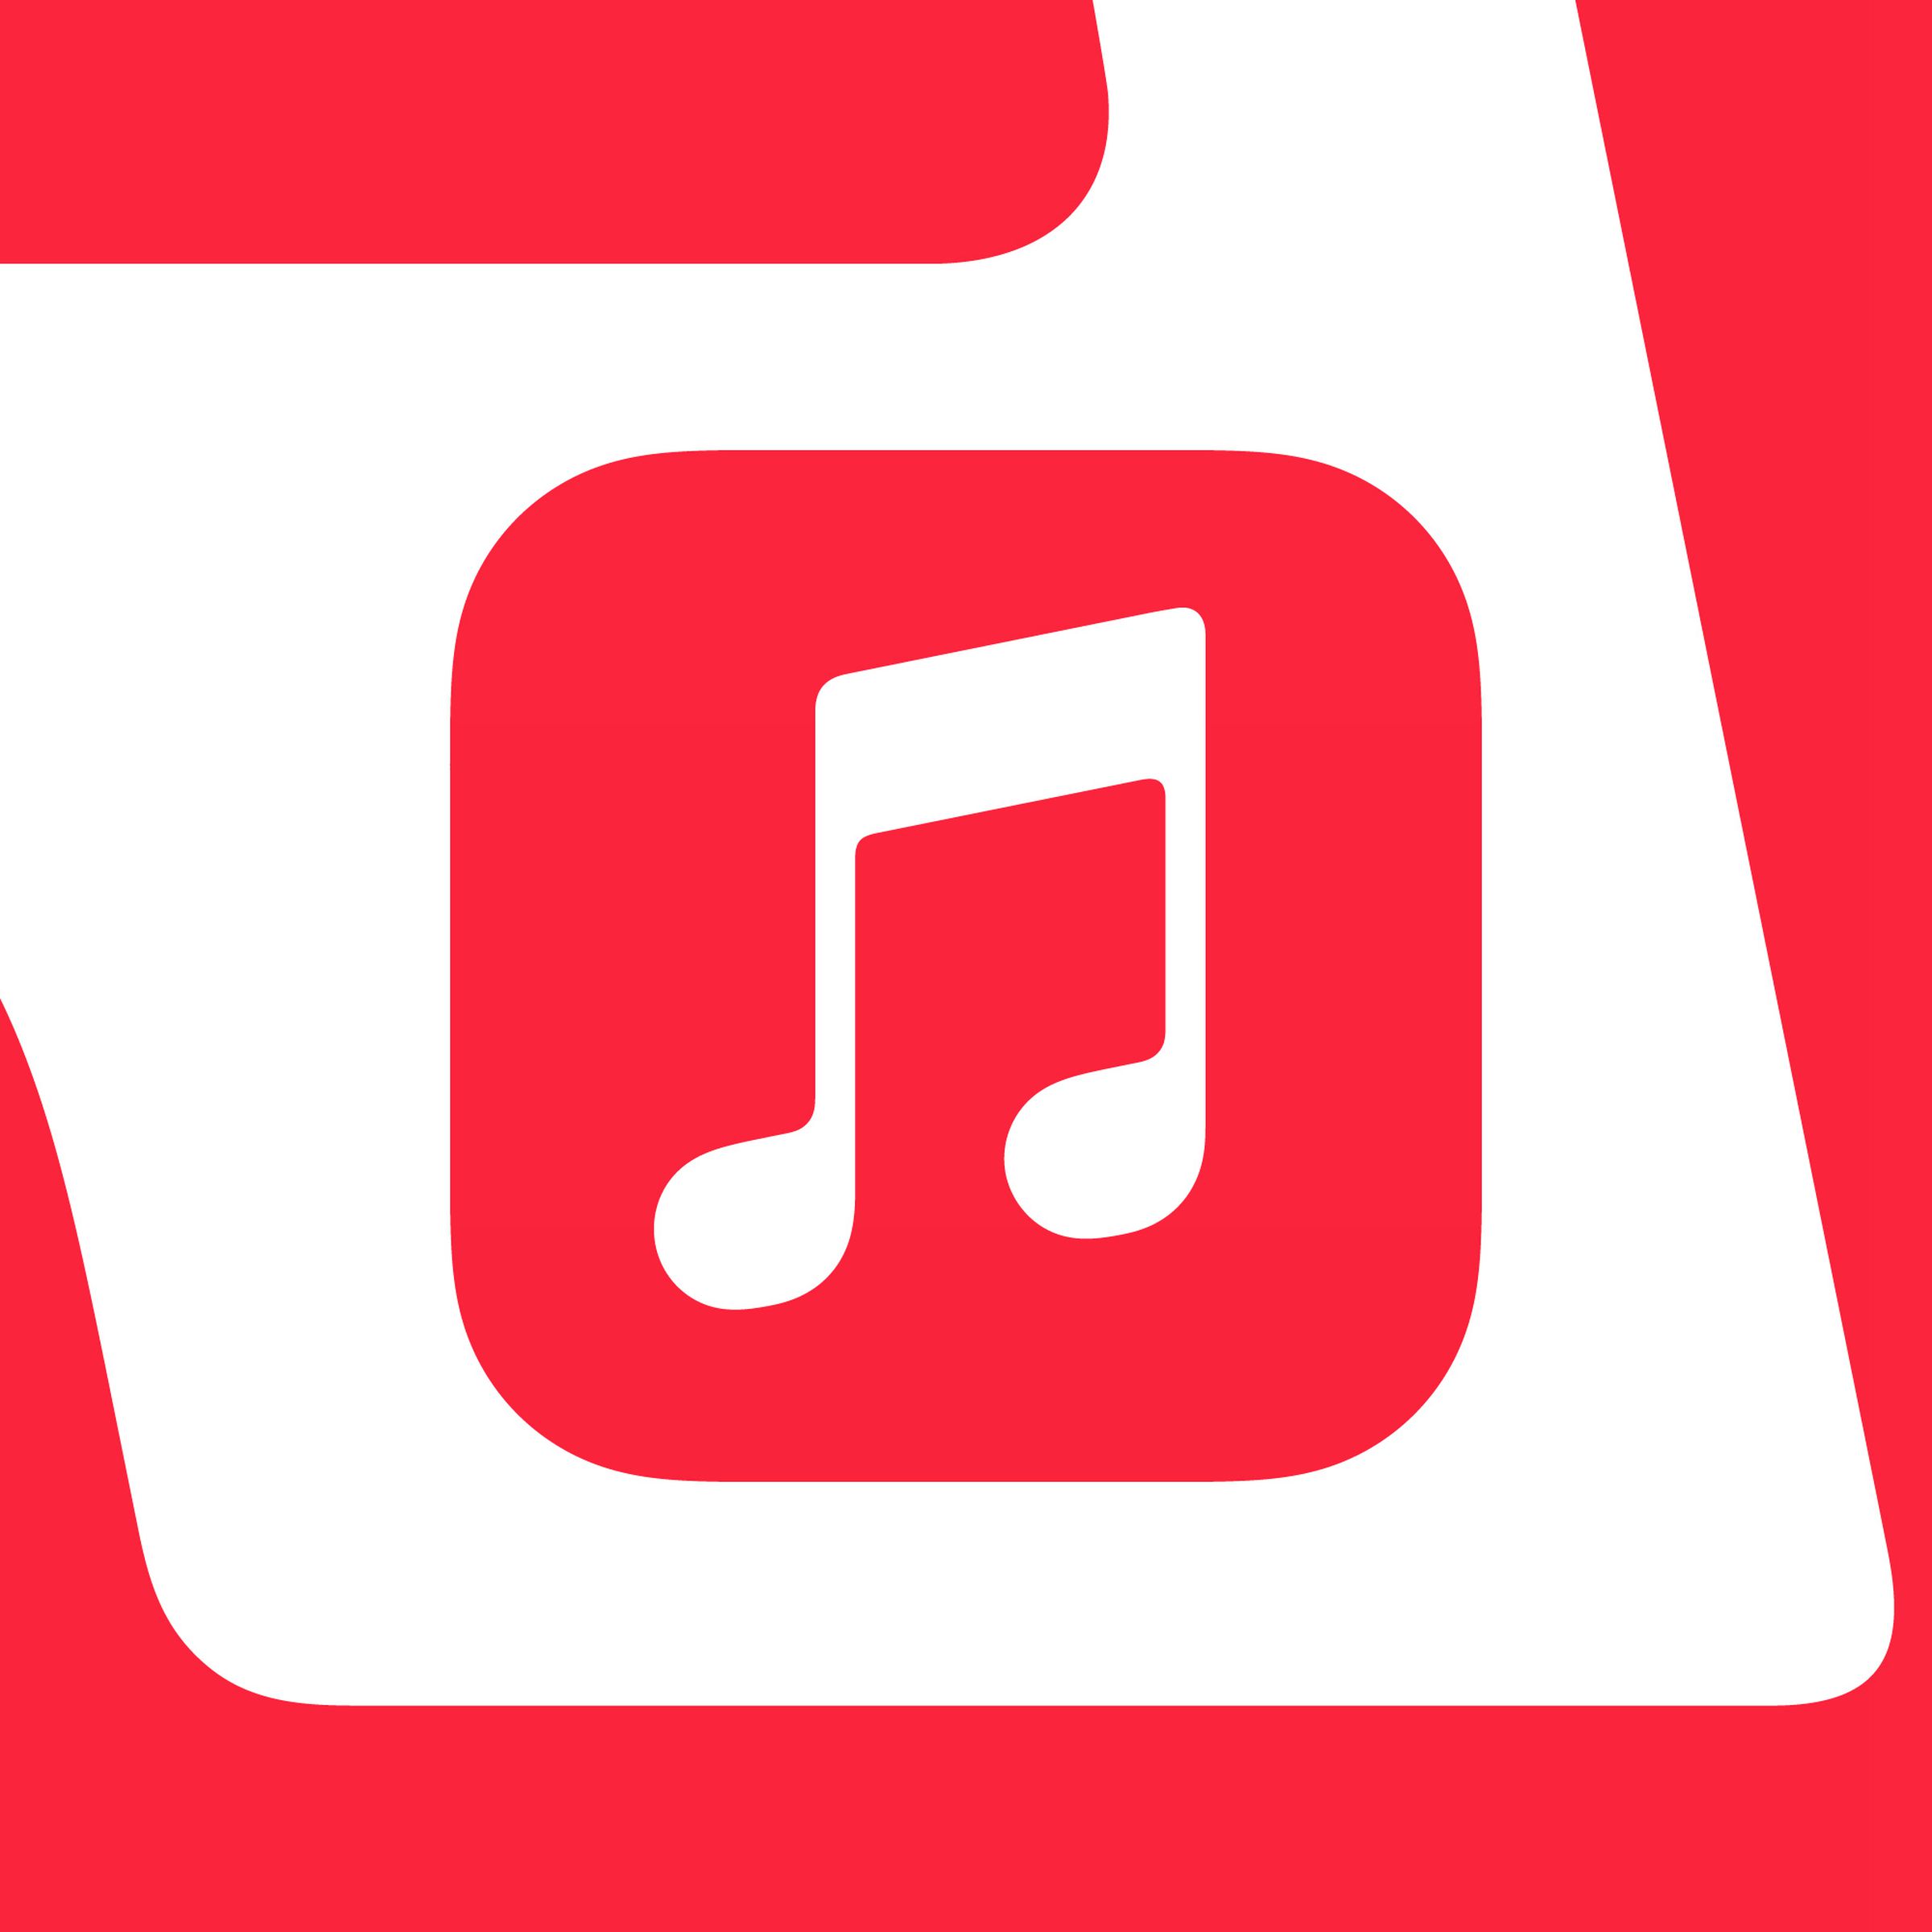 An Apple Music logo.